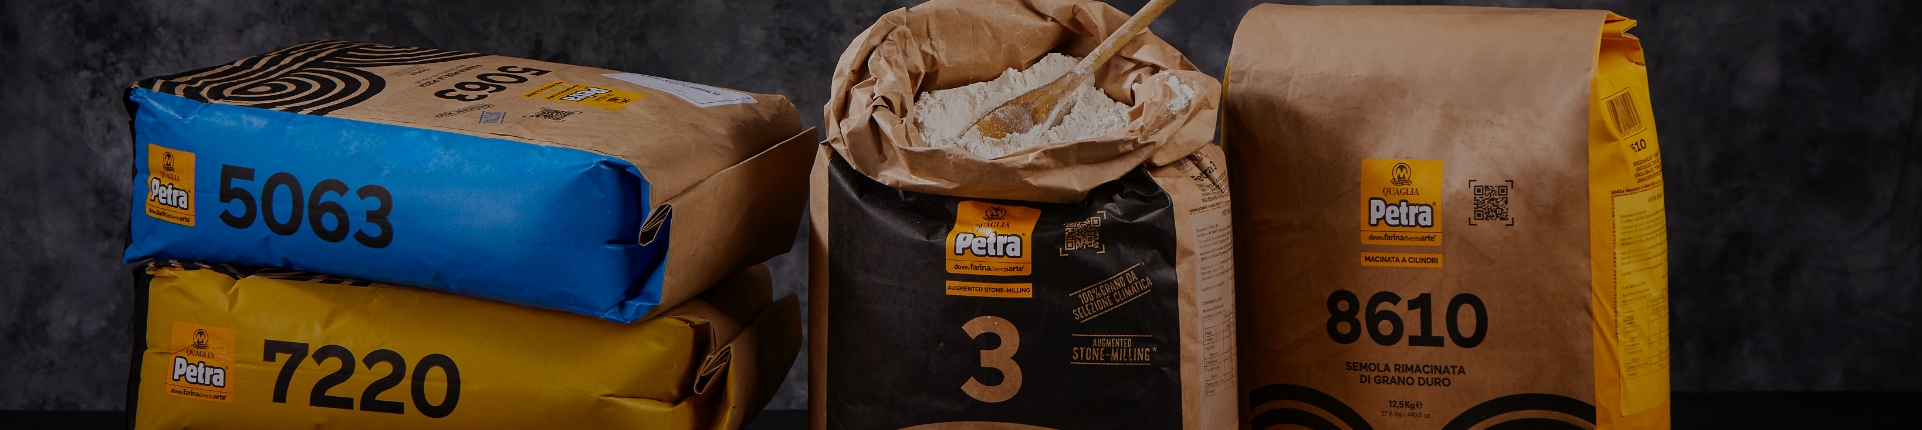 PETRA FARINA PER SFOGLIA 12.5KG - Puff Pastry Dough 